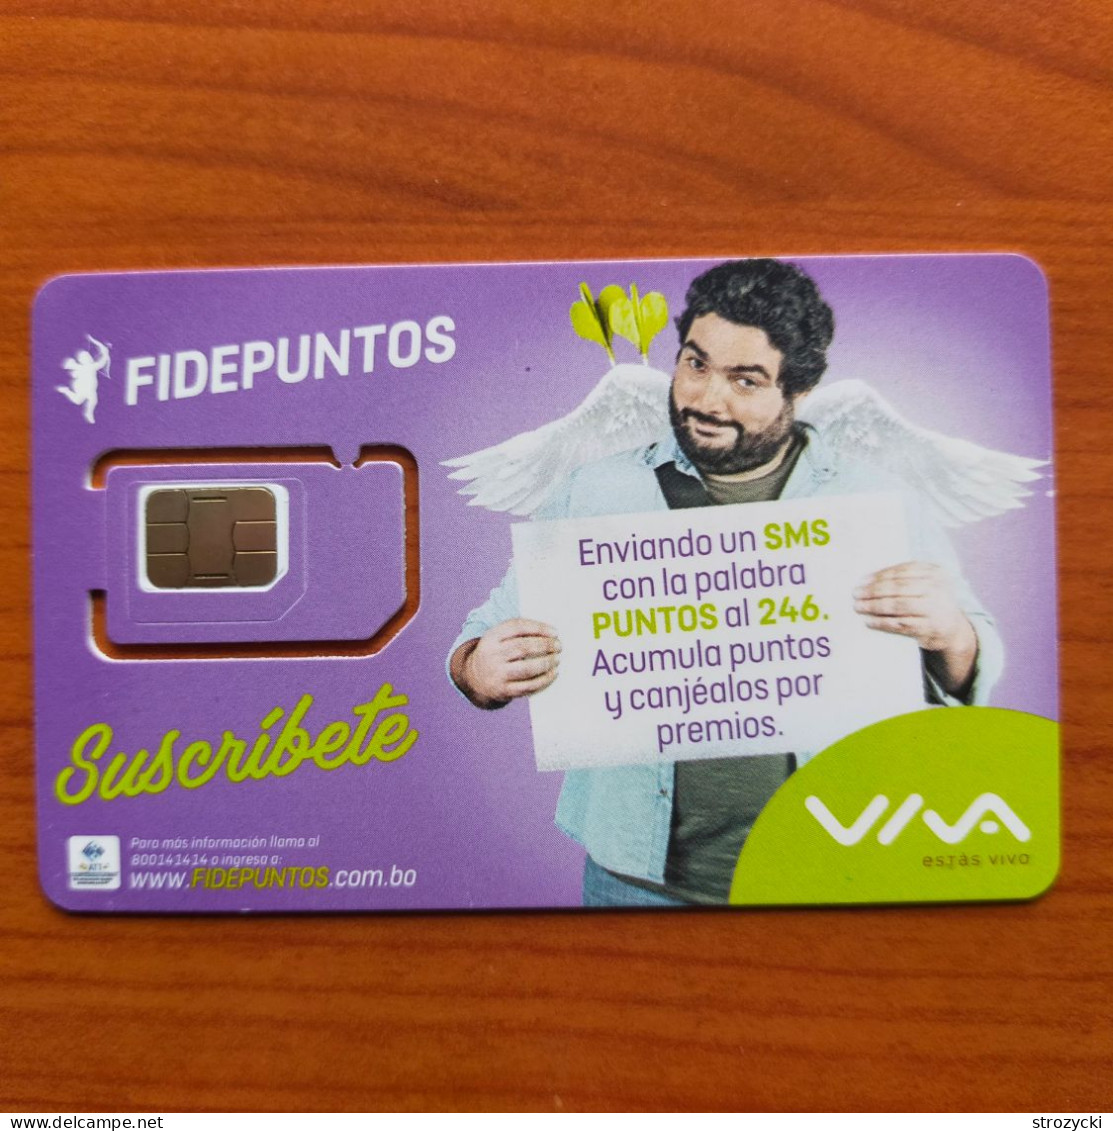 Bolivia - Viva - Fidepuntos - Suscríbete (standard,micro,nano SIM) - GSM SIM - Mint - Bolivie